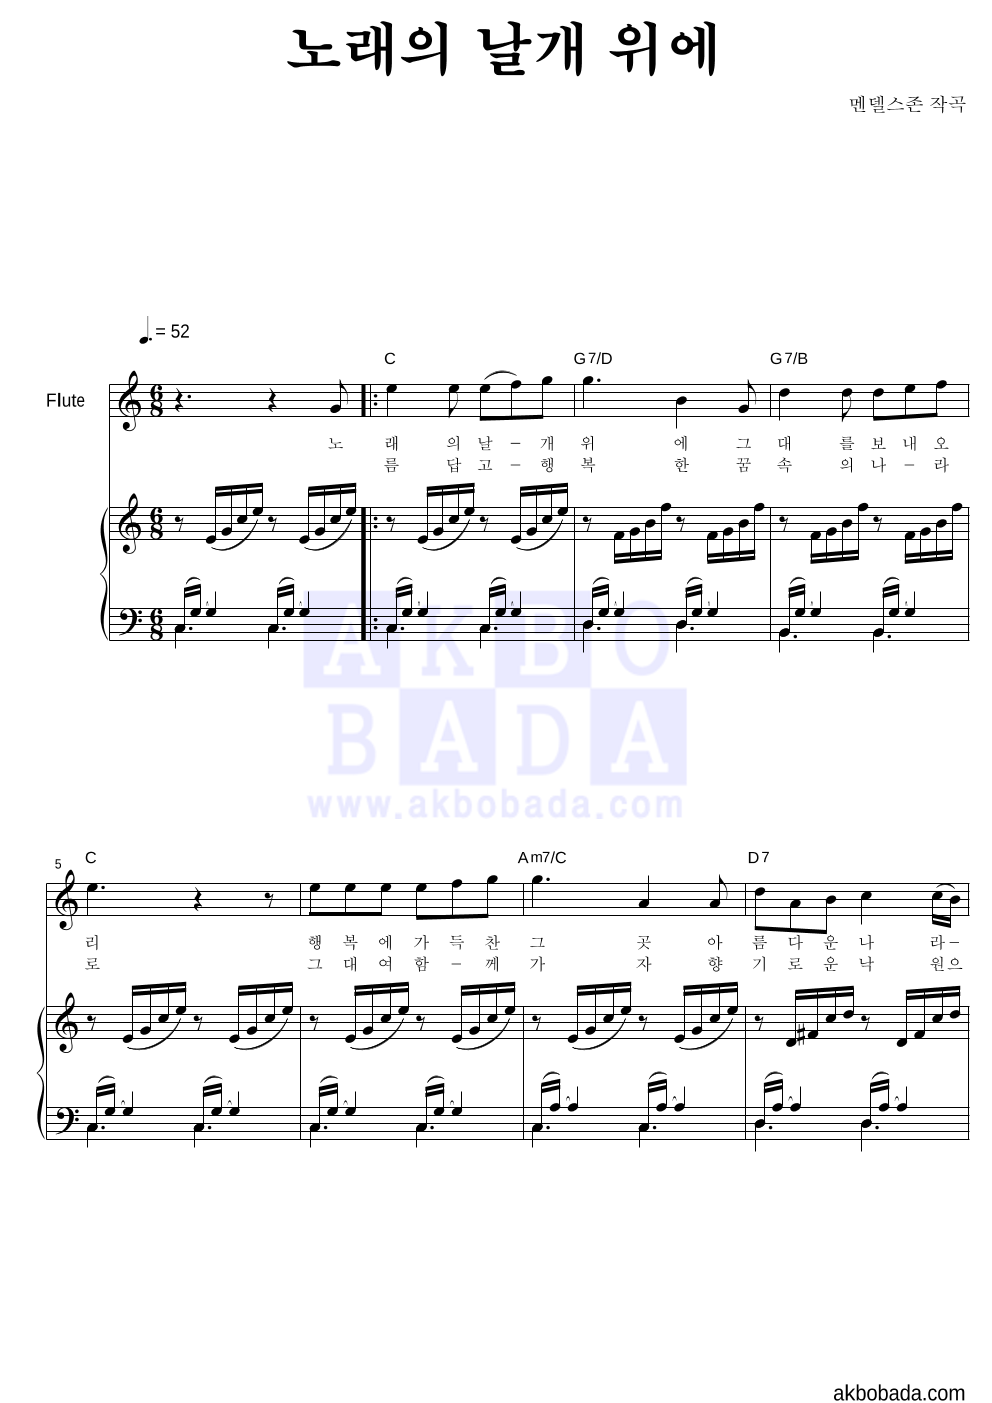 멘델스존 - 노래의 날개 위에 플룻&피아노 악보 